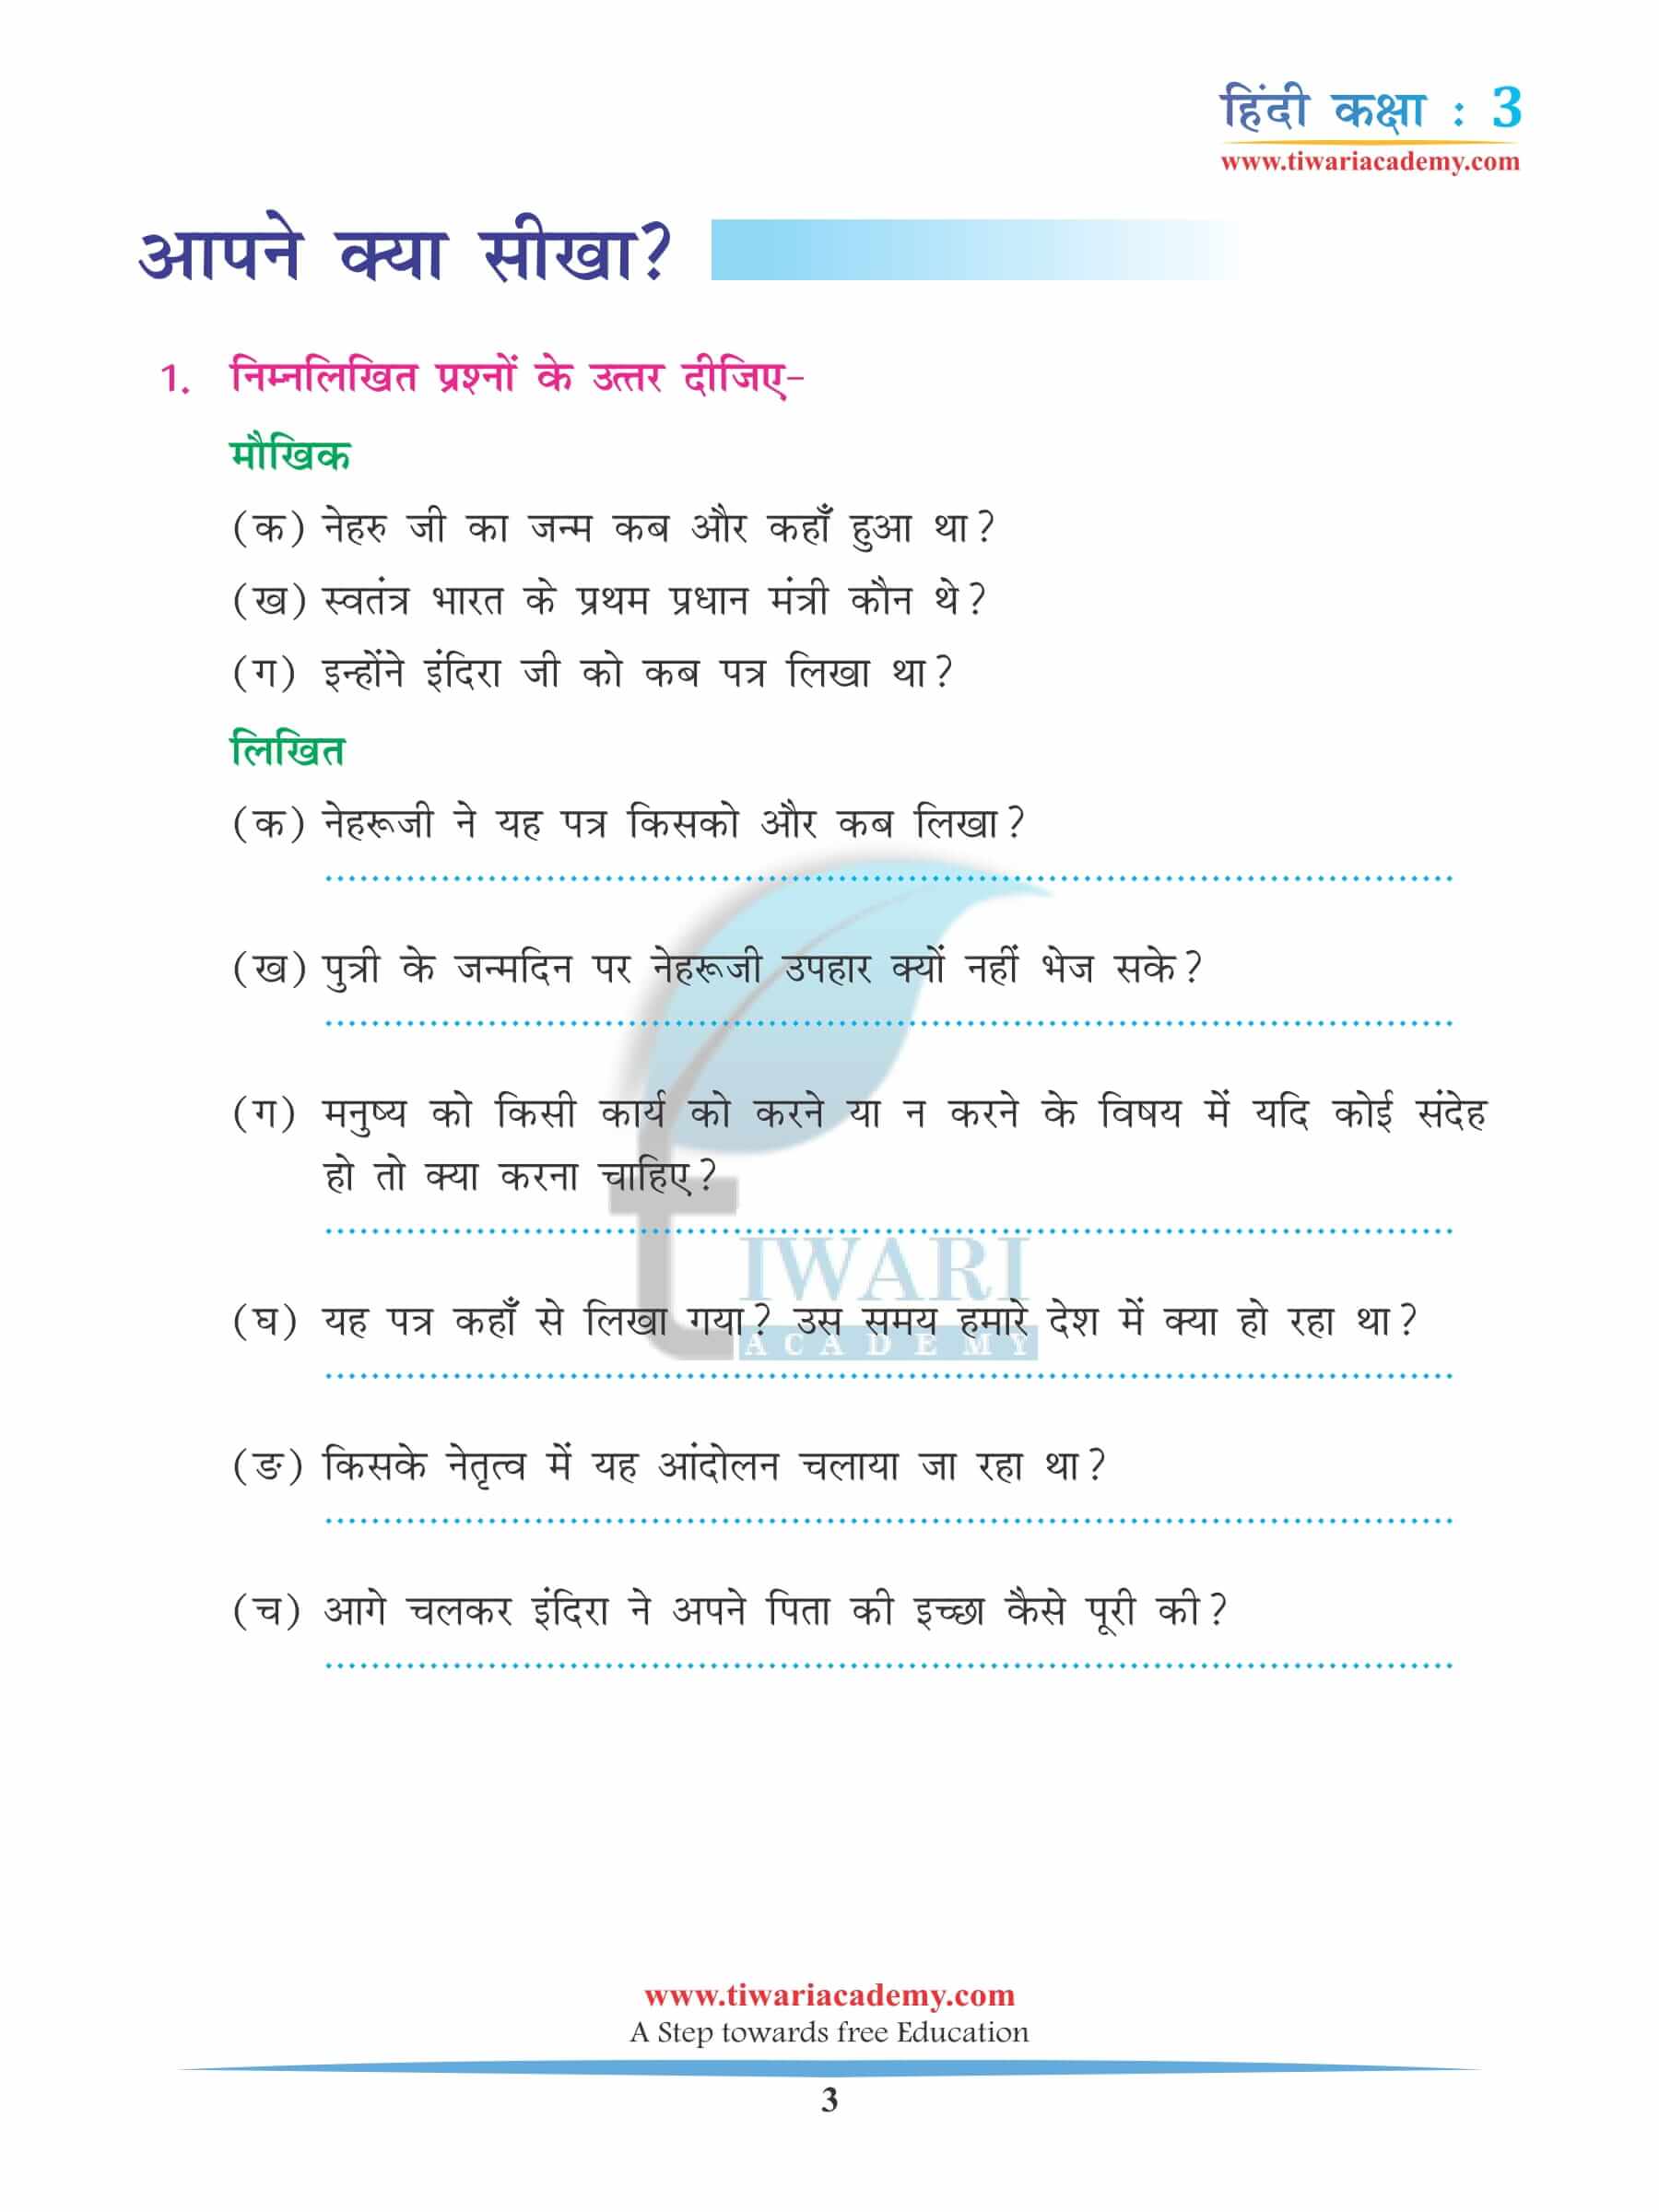 कक्षा 3 हिंदी अध्याय 9 अभ्यास के प्रश्न उत्तर